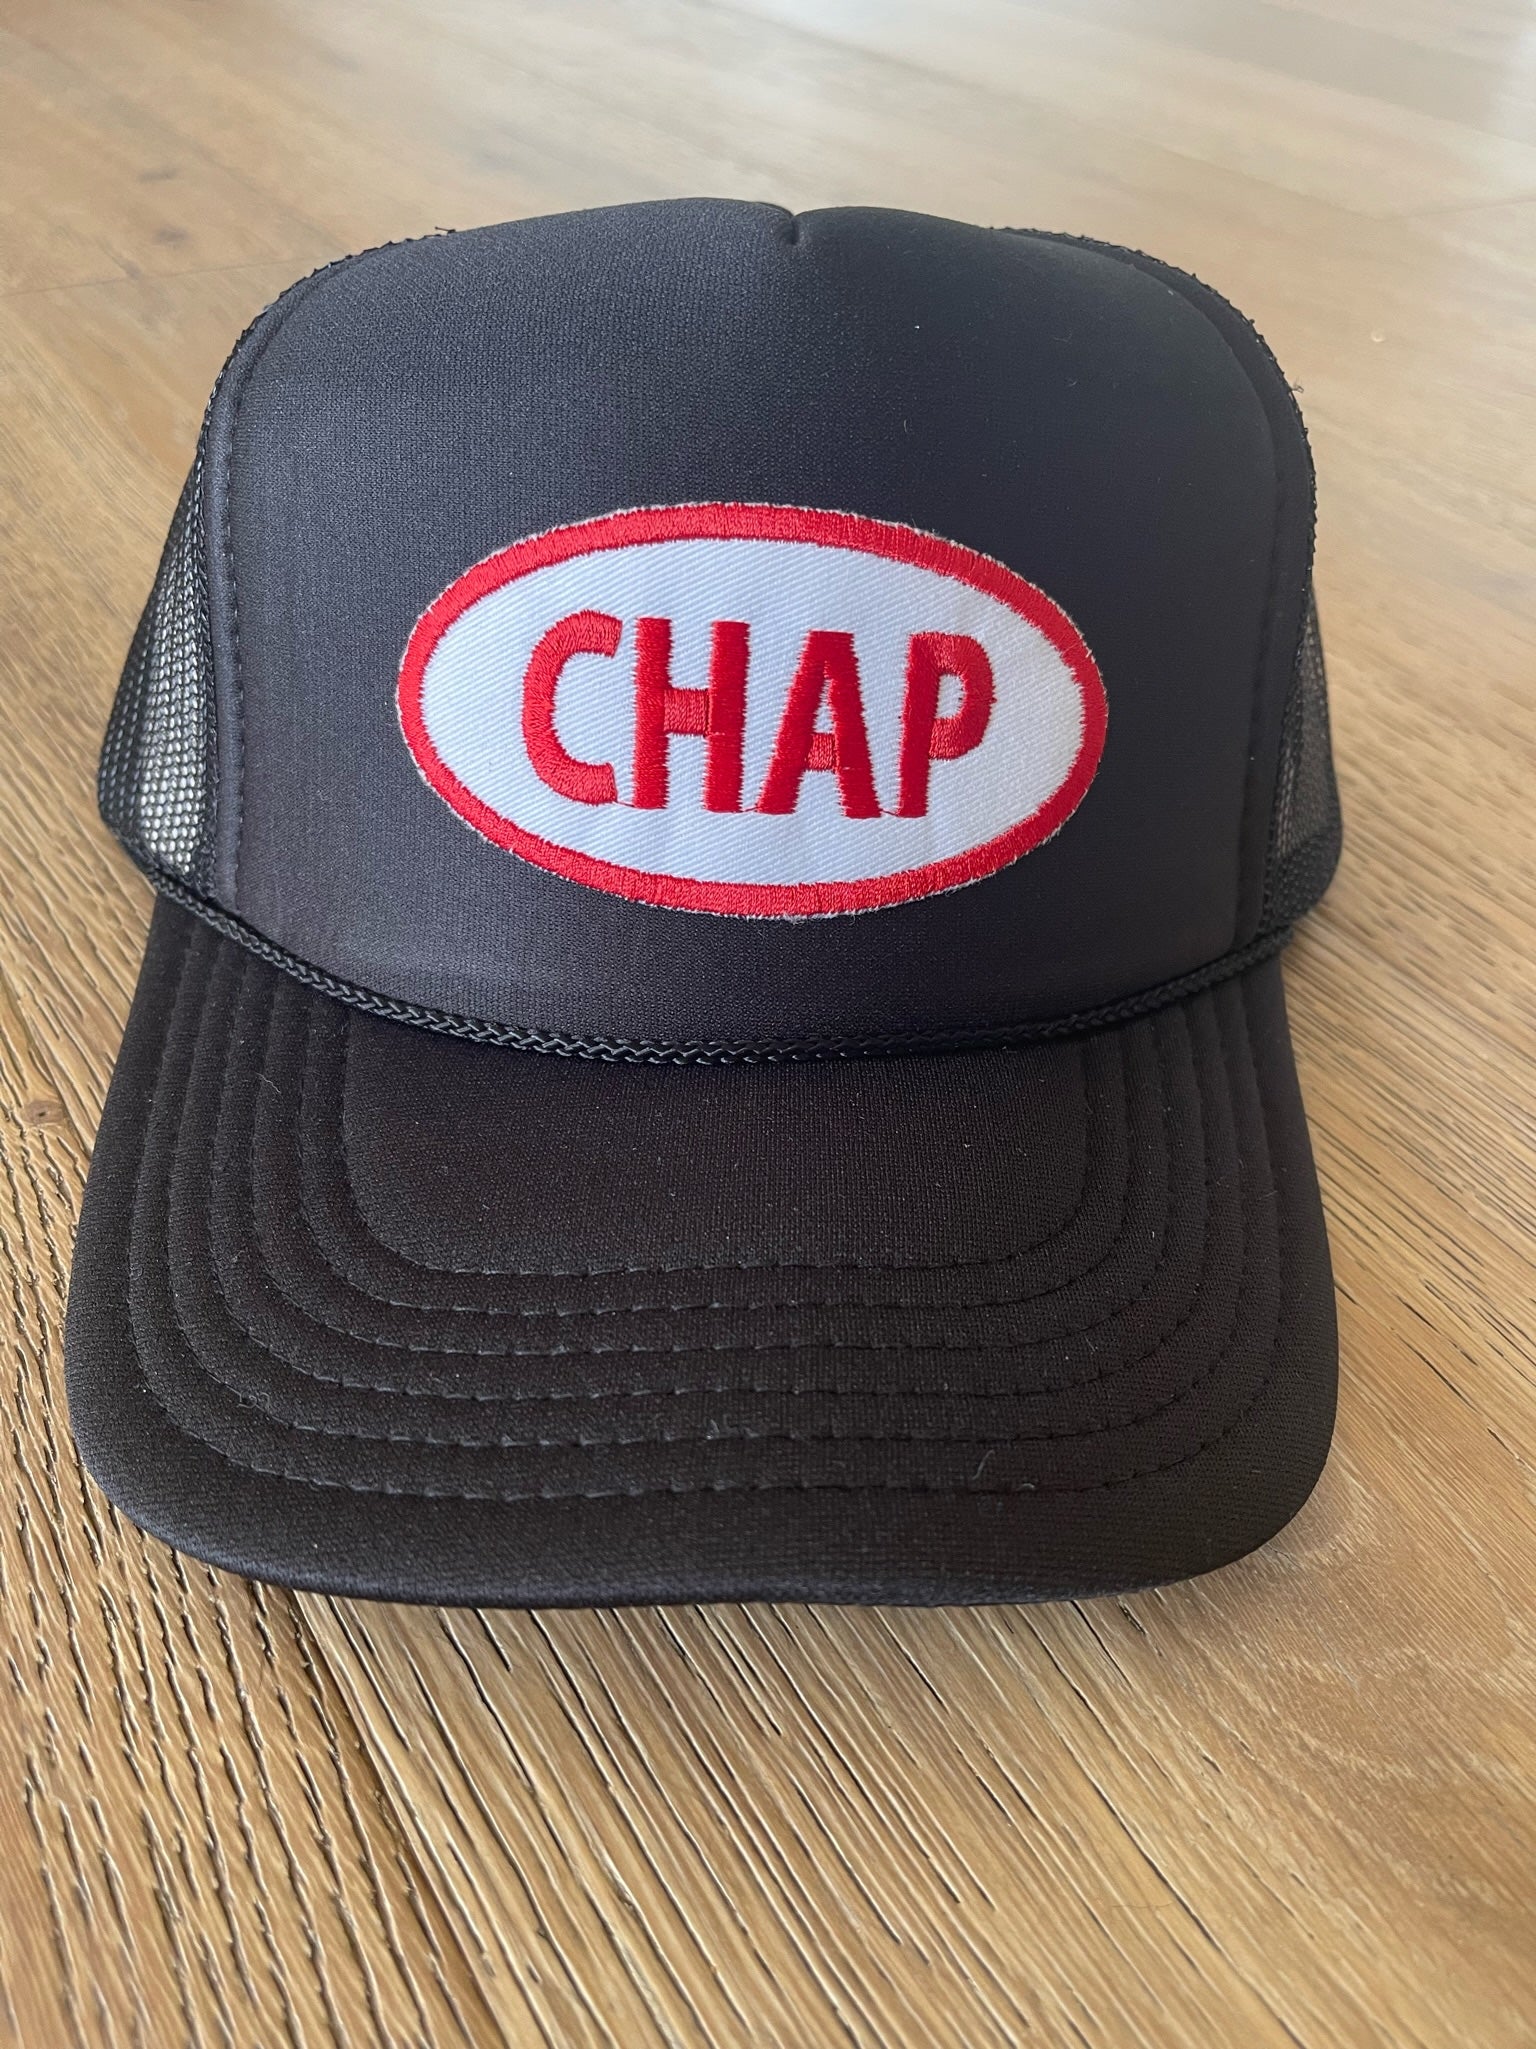 Chap Trucker Hat